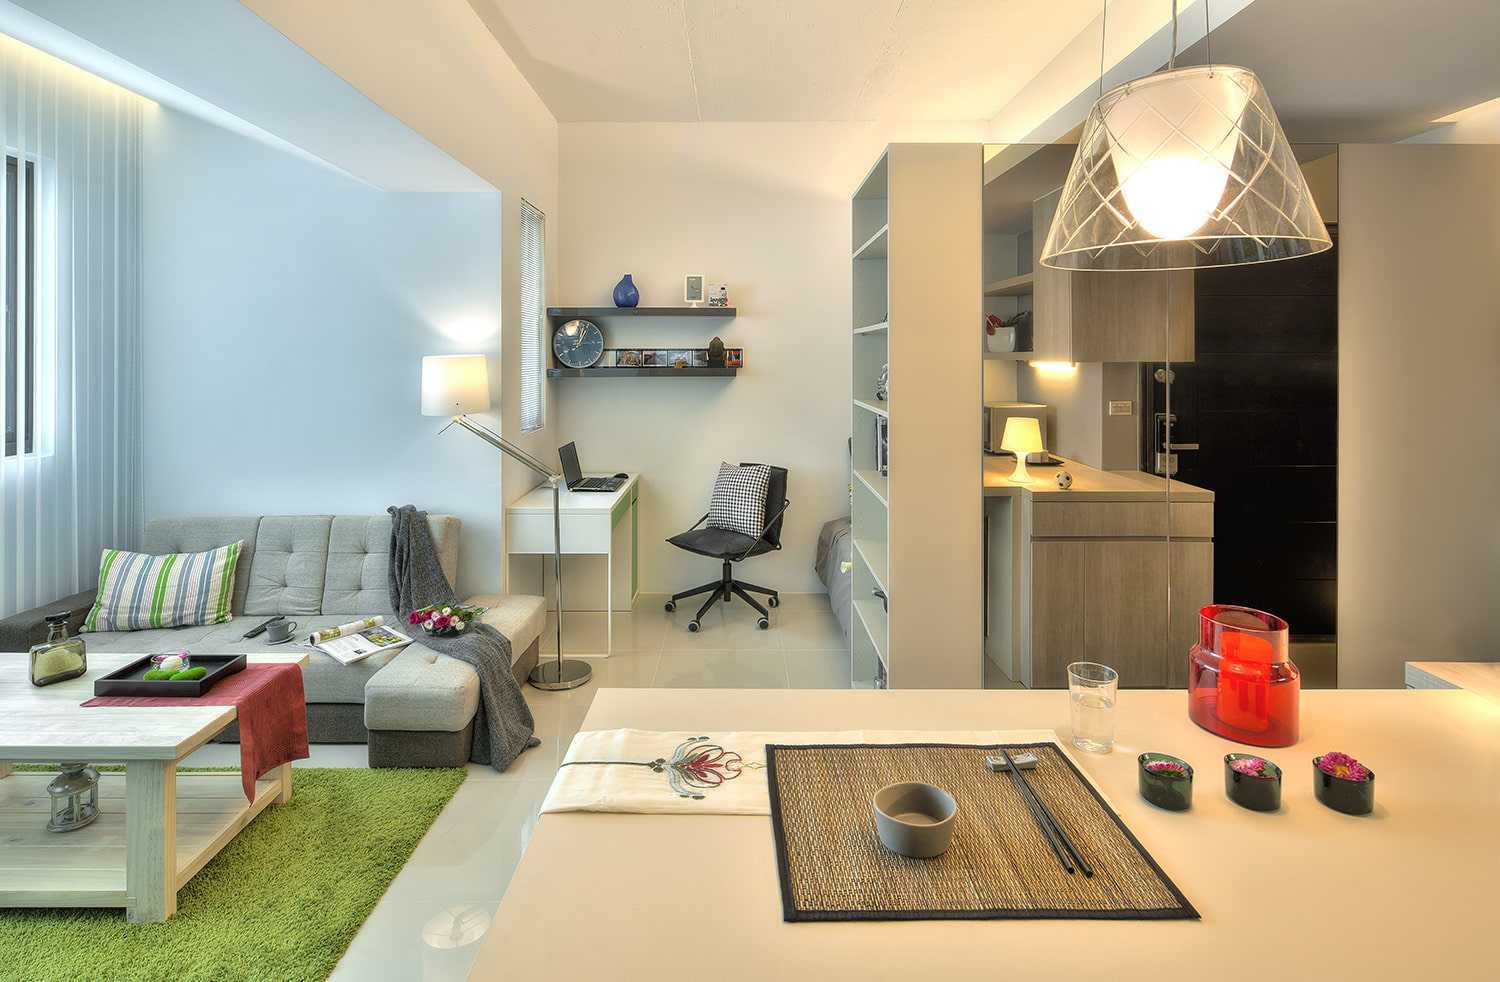 Оформить дизайн двухкомнатной квартиры 50 квм несложно: тщательно проработайте интерьер каждой комнаты Фото в нашей статье помогут с поиском свежих идей